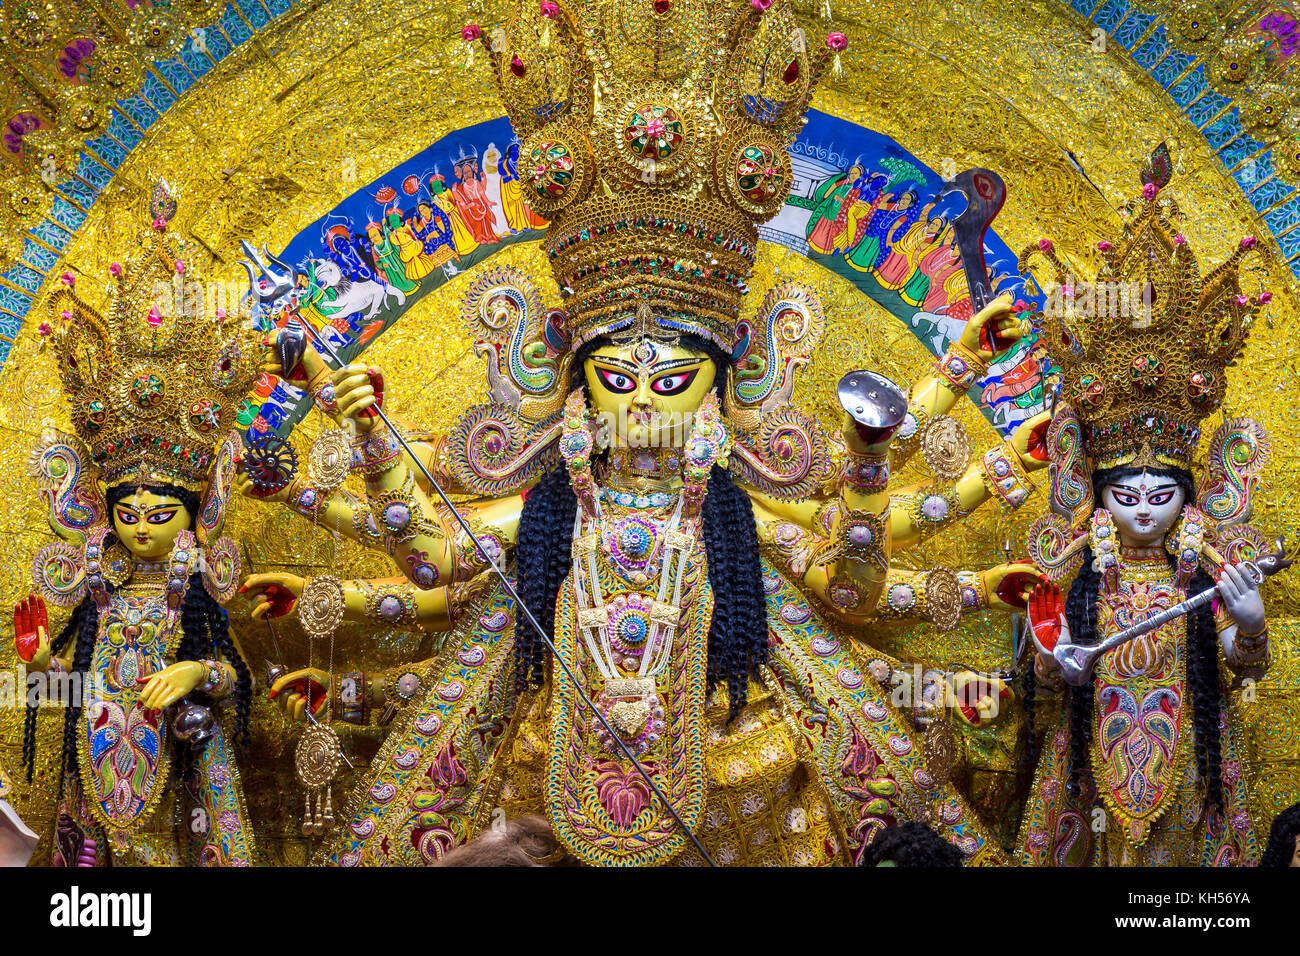 Göttin Durga zusammen mit anderen hinduistischen Gottheiten an Durga Puja Festival in Kolkata, Indien. Stockfoto